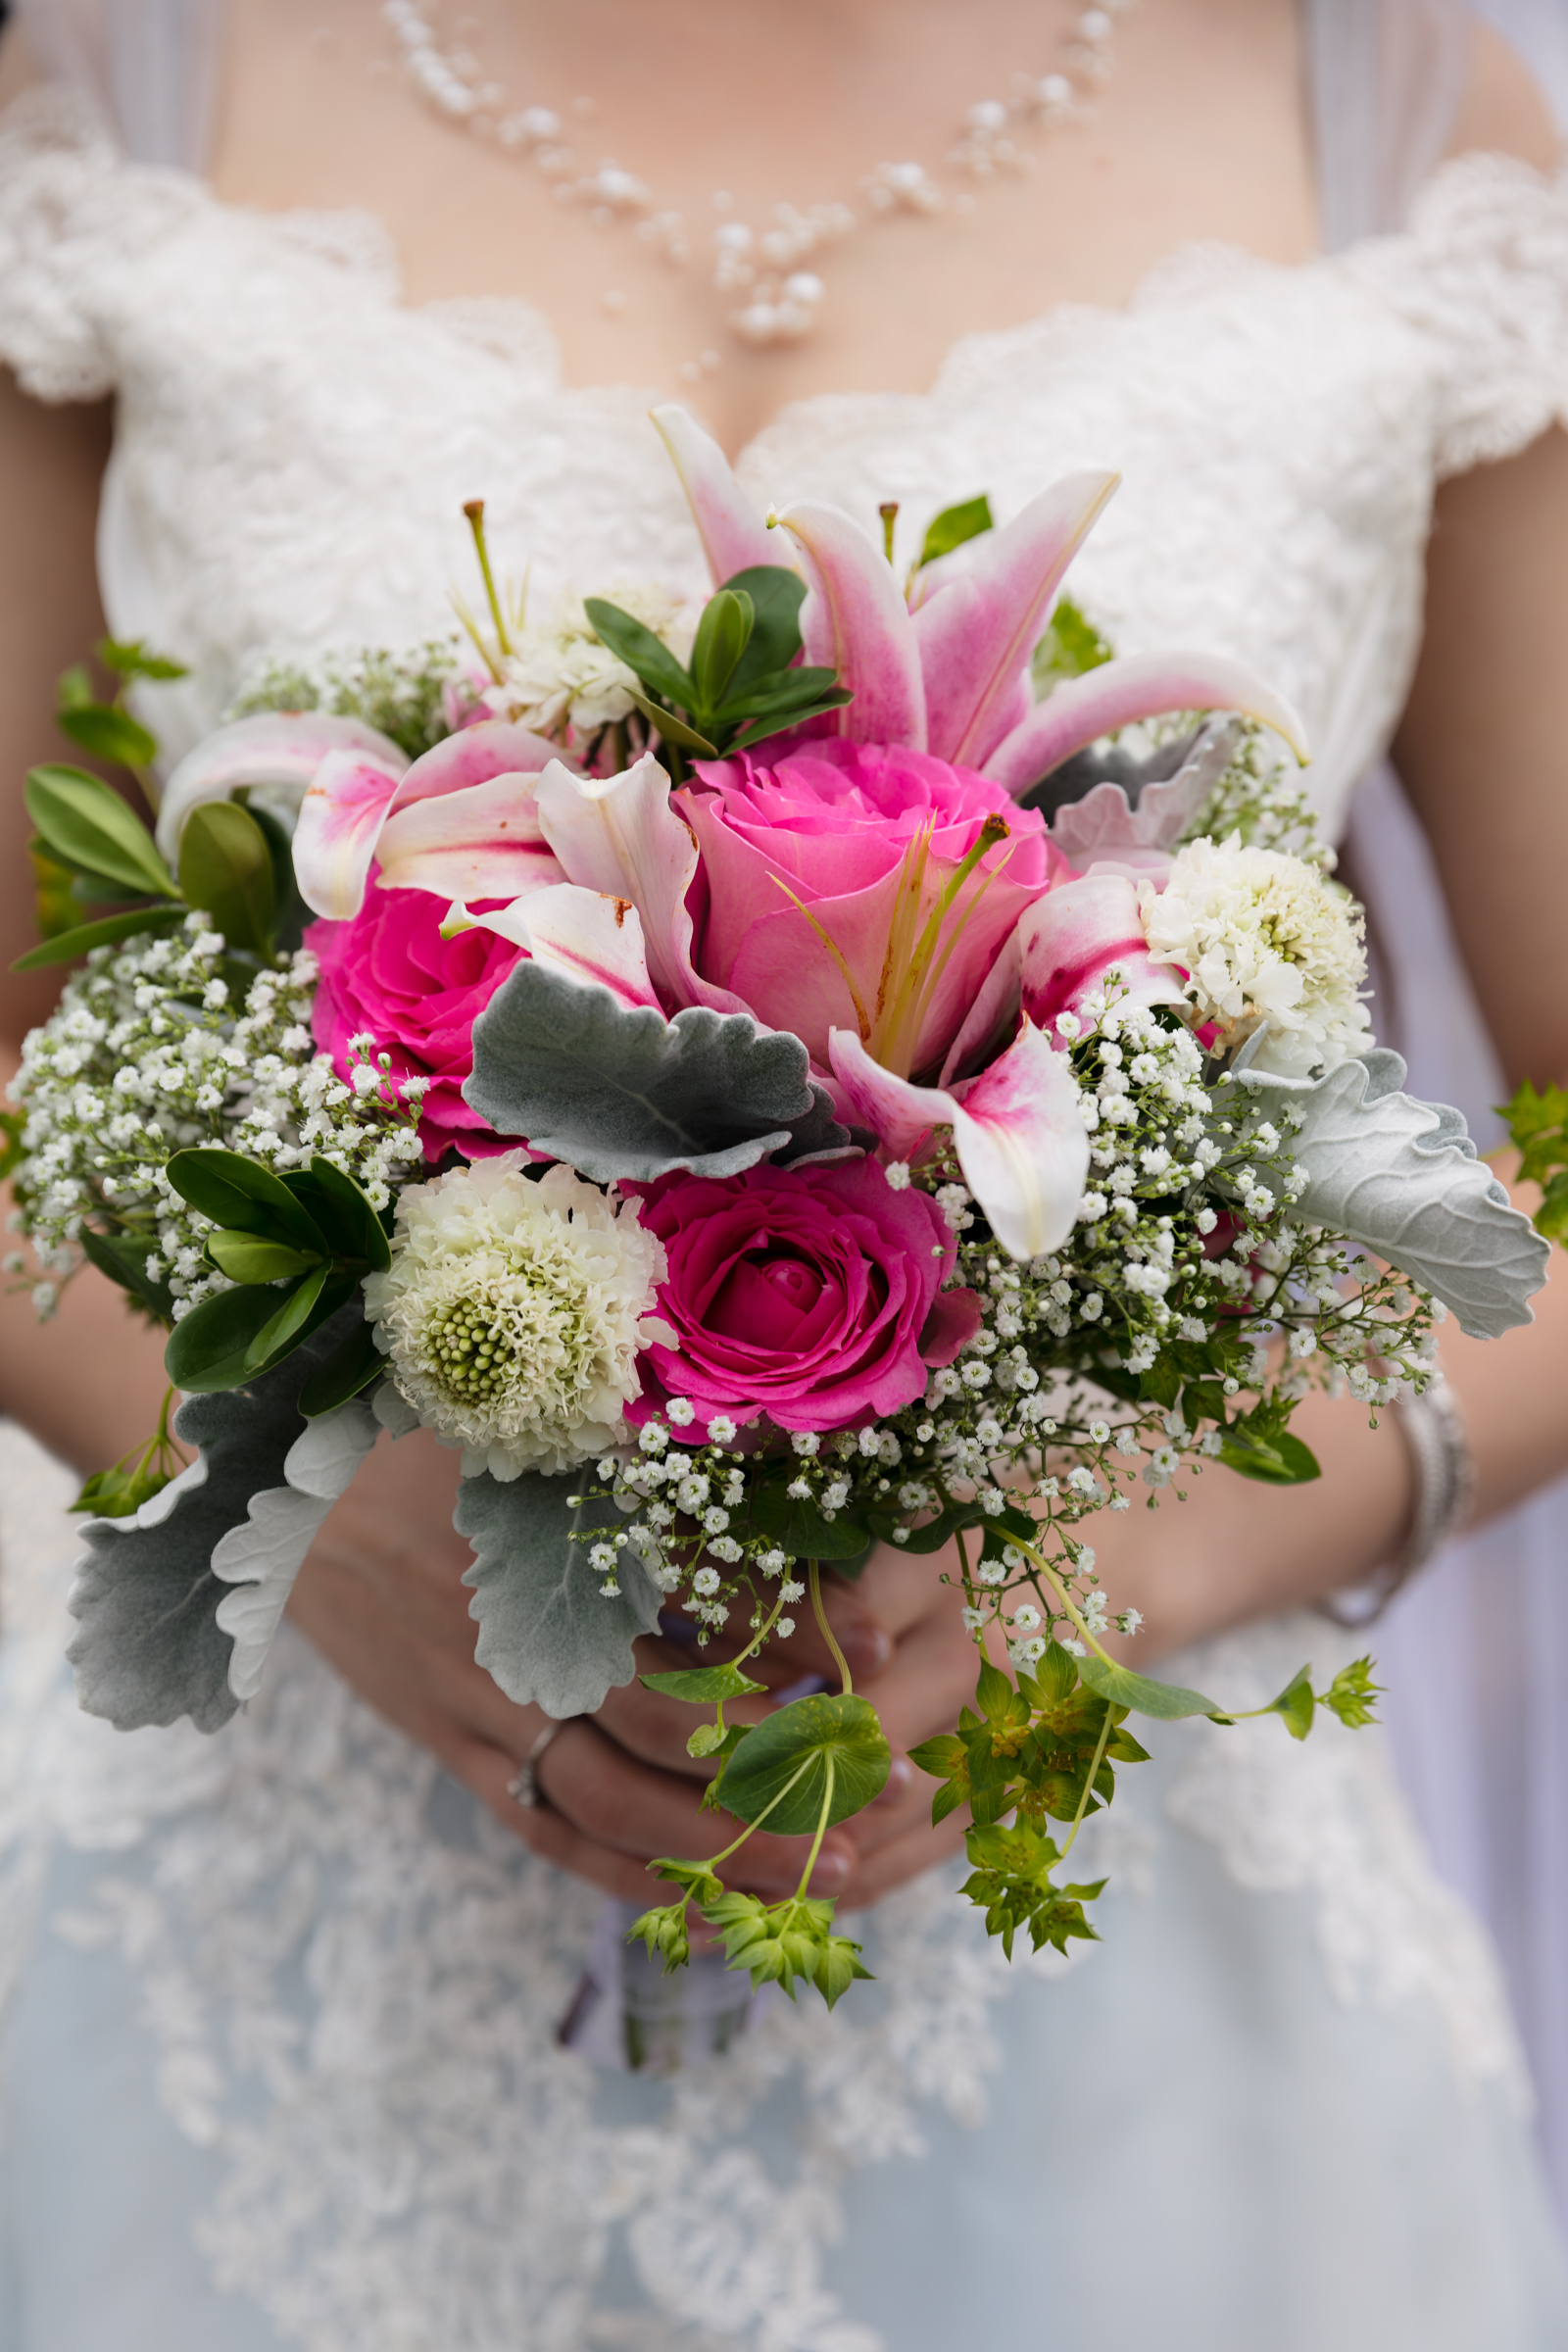 New Hampshire Wedding Photographer 014 - Portfolio: Engagements / Weddings